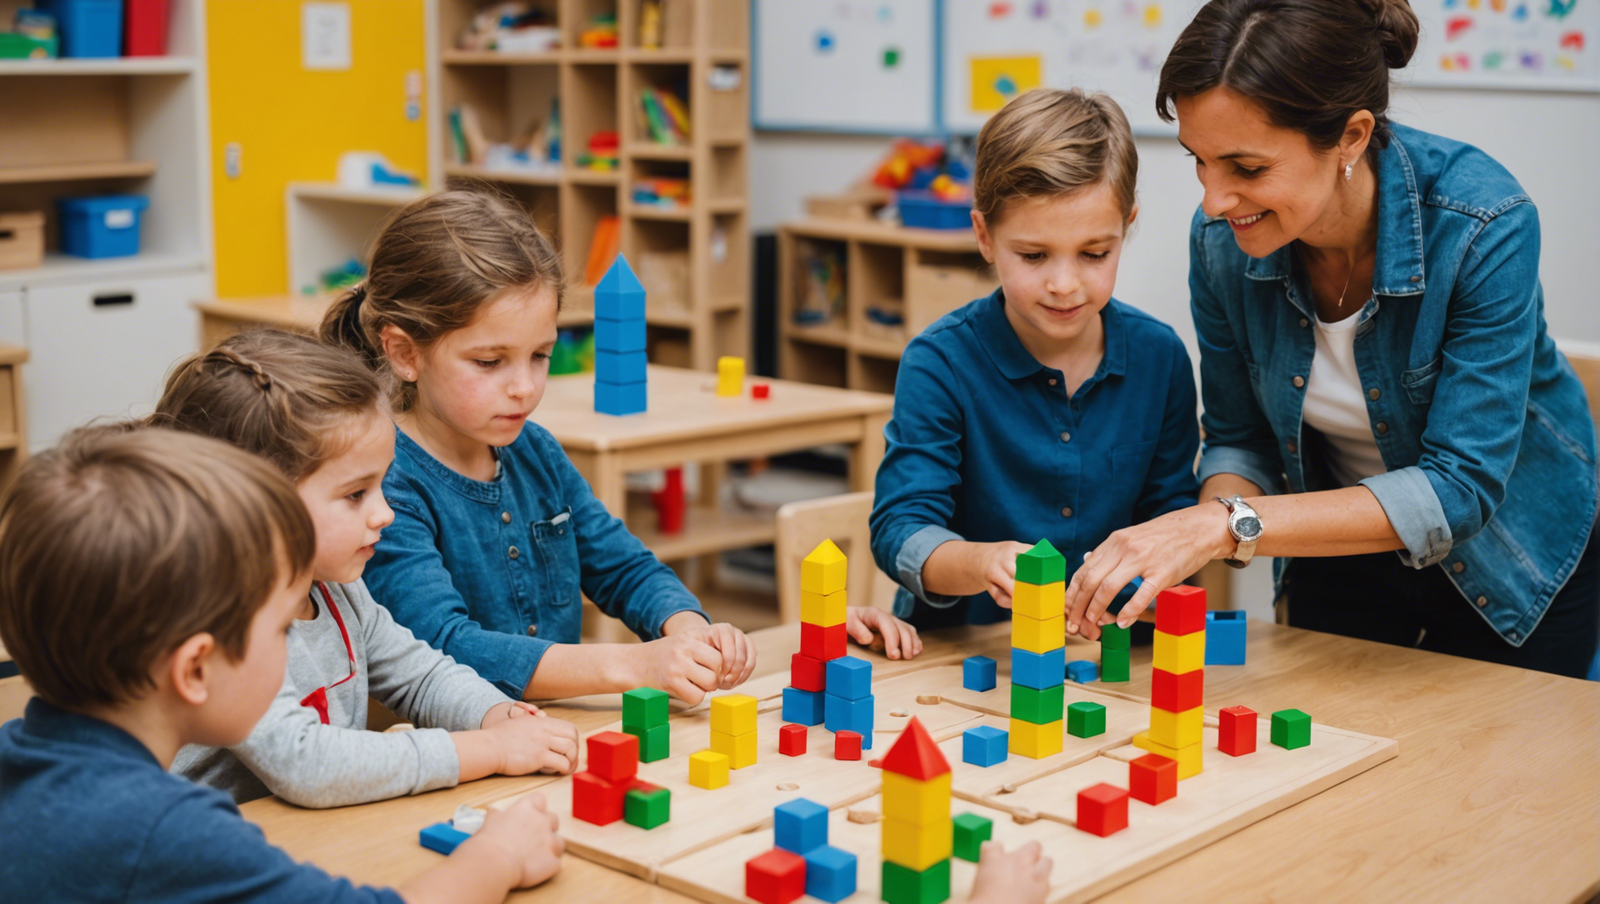 découvrez comment favoriser la responsabilisation et l'initiative à travers l'approche pédagogique de la tour montessori.